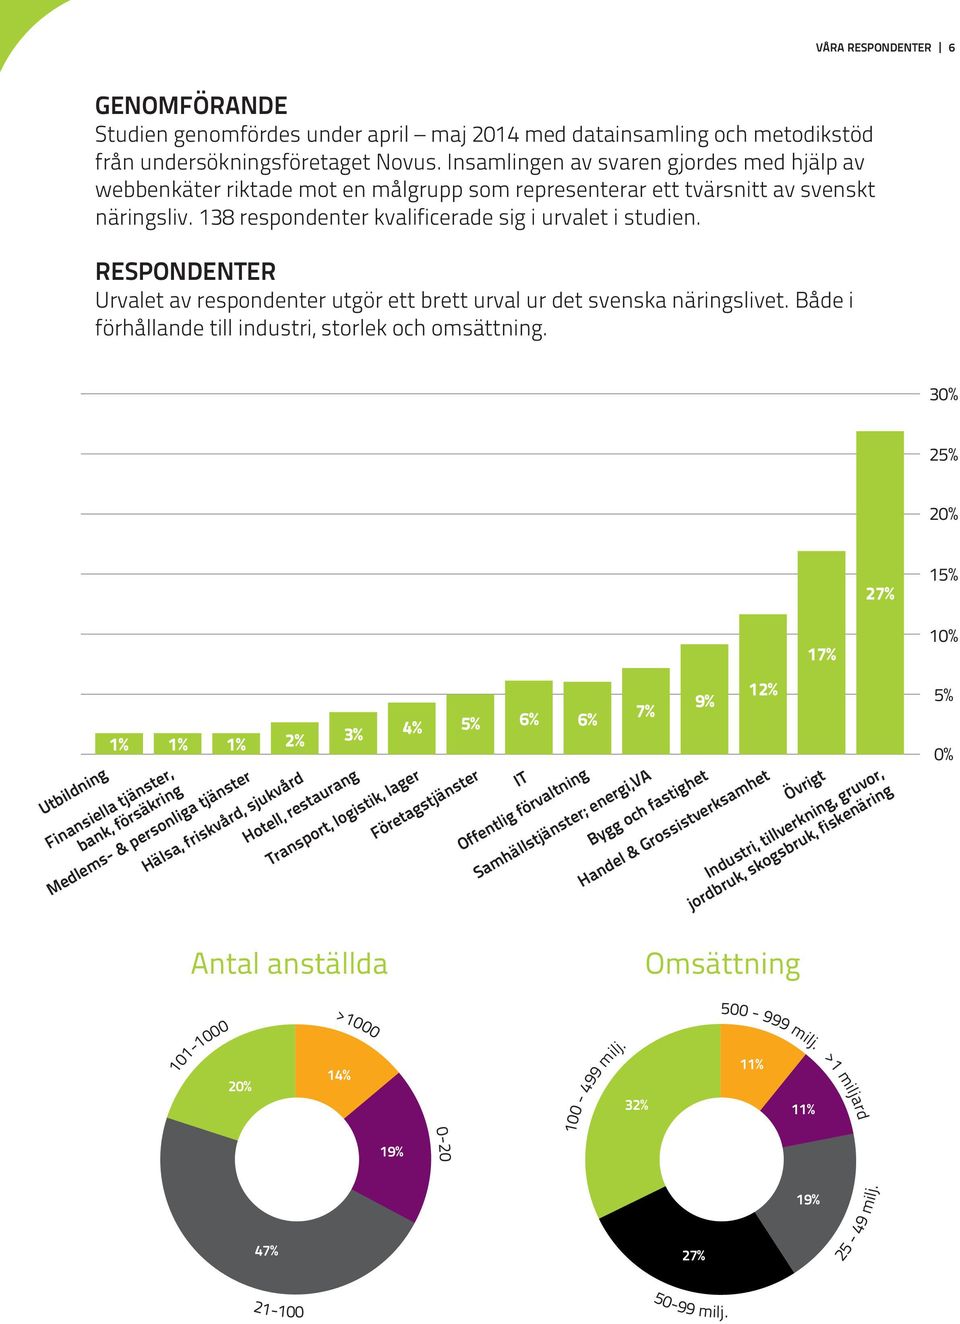 RESPONDENTER Urvalet av respondenter utgör ett brett urval ur det svenska näringslivet. Både i förhållande till industri, storlek och omsättning.